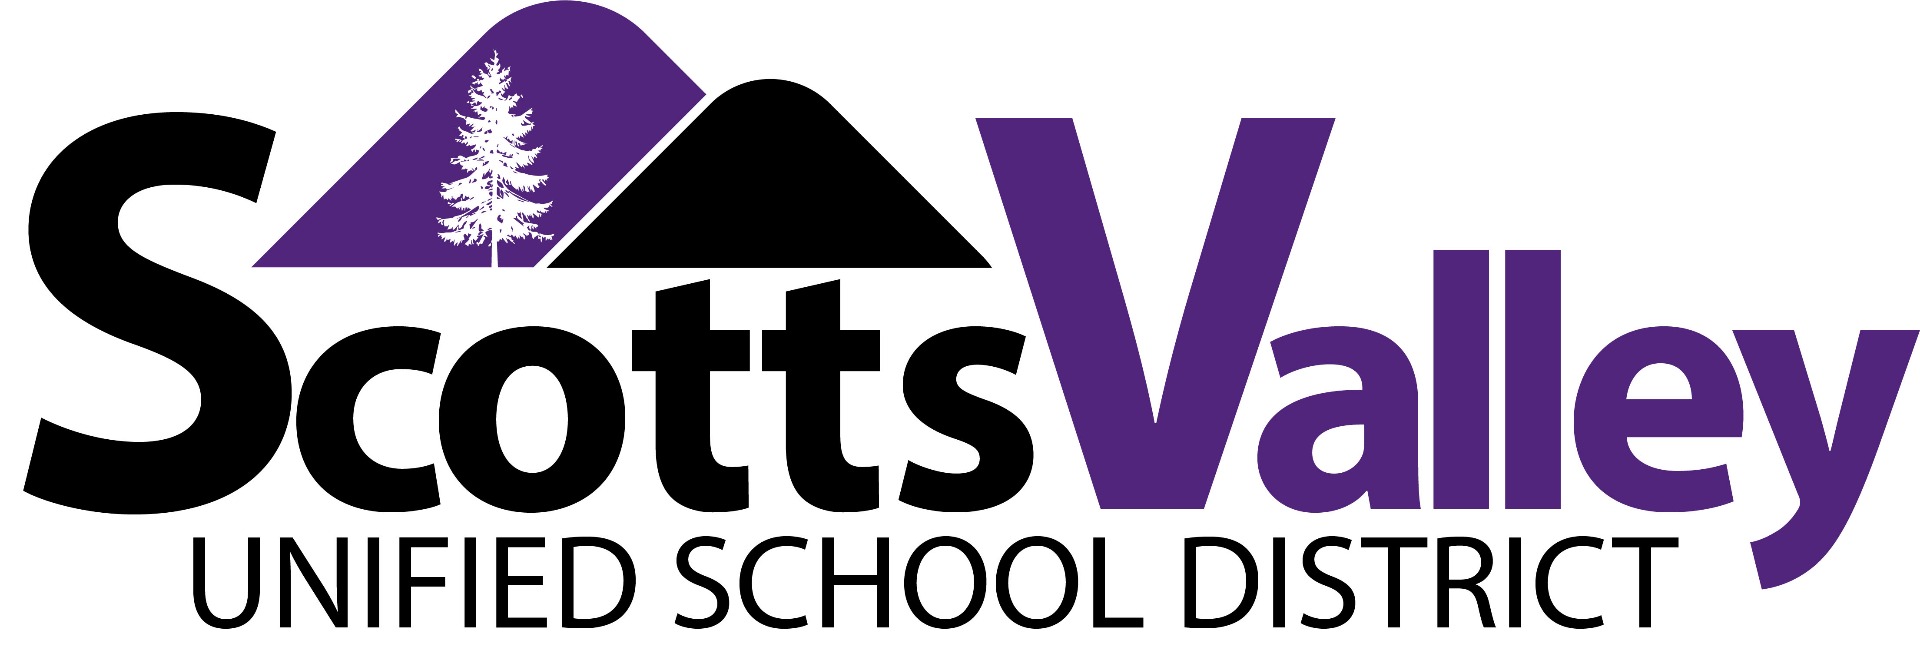 Scotts Valley USD logo